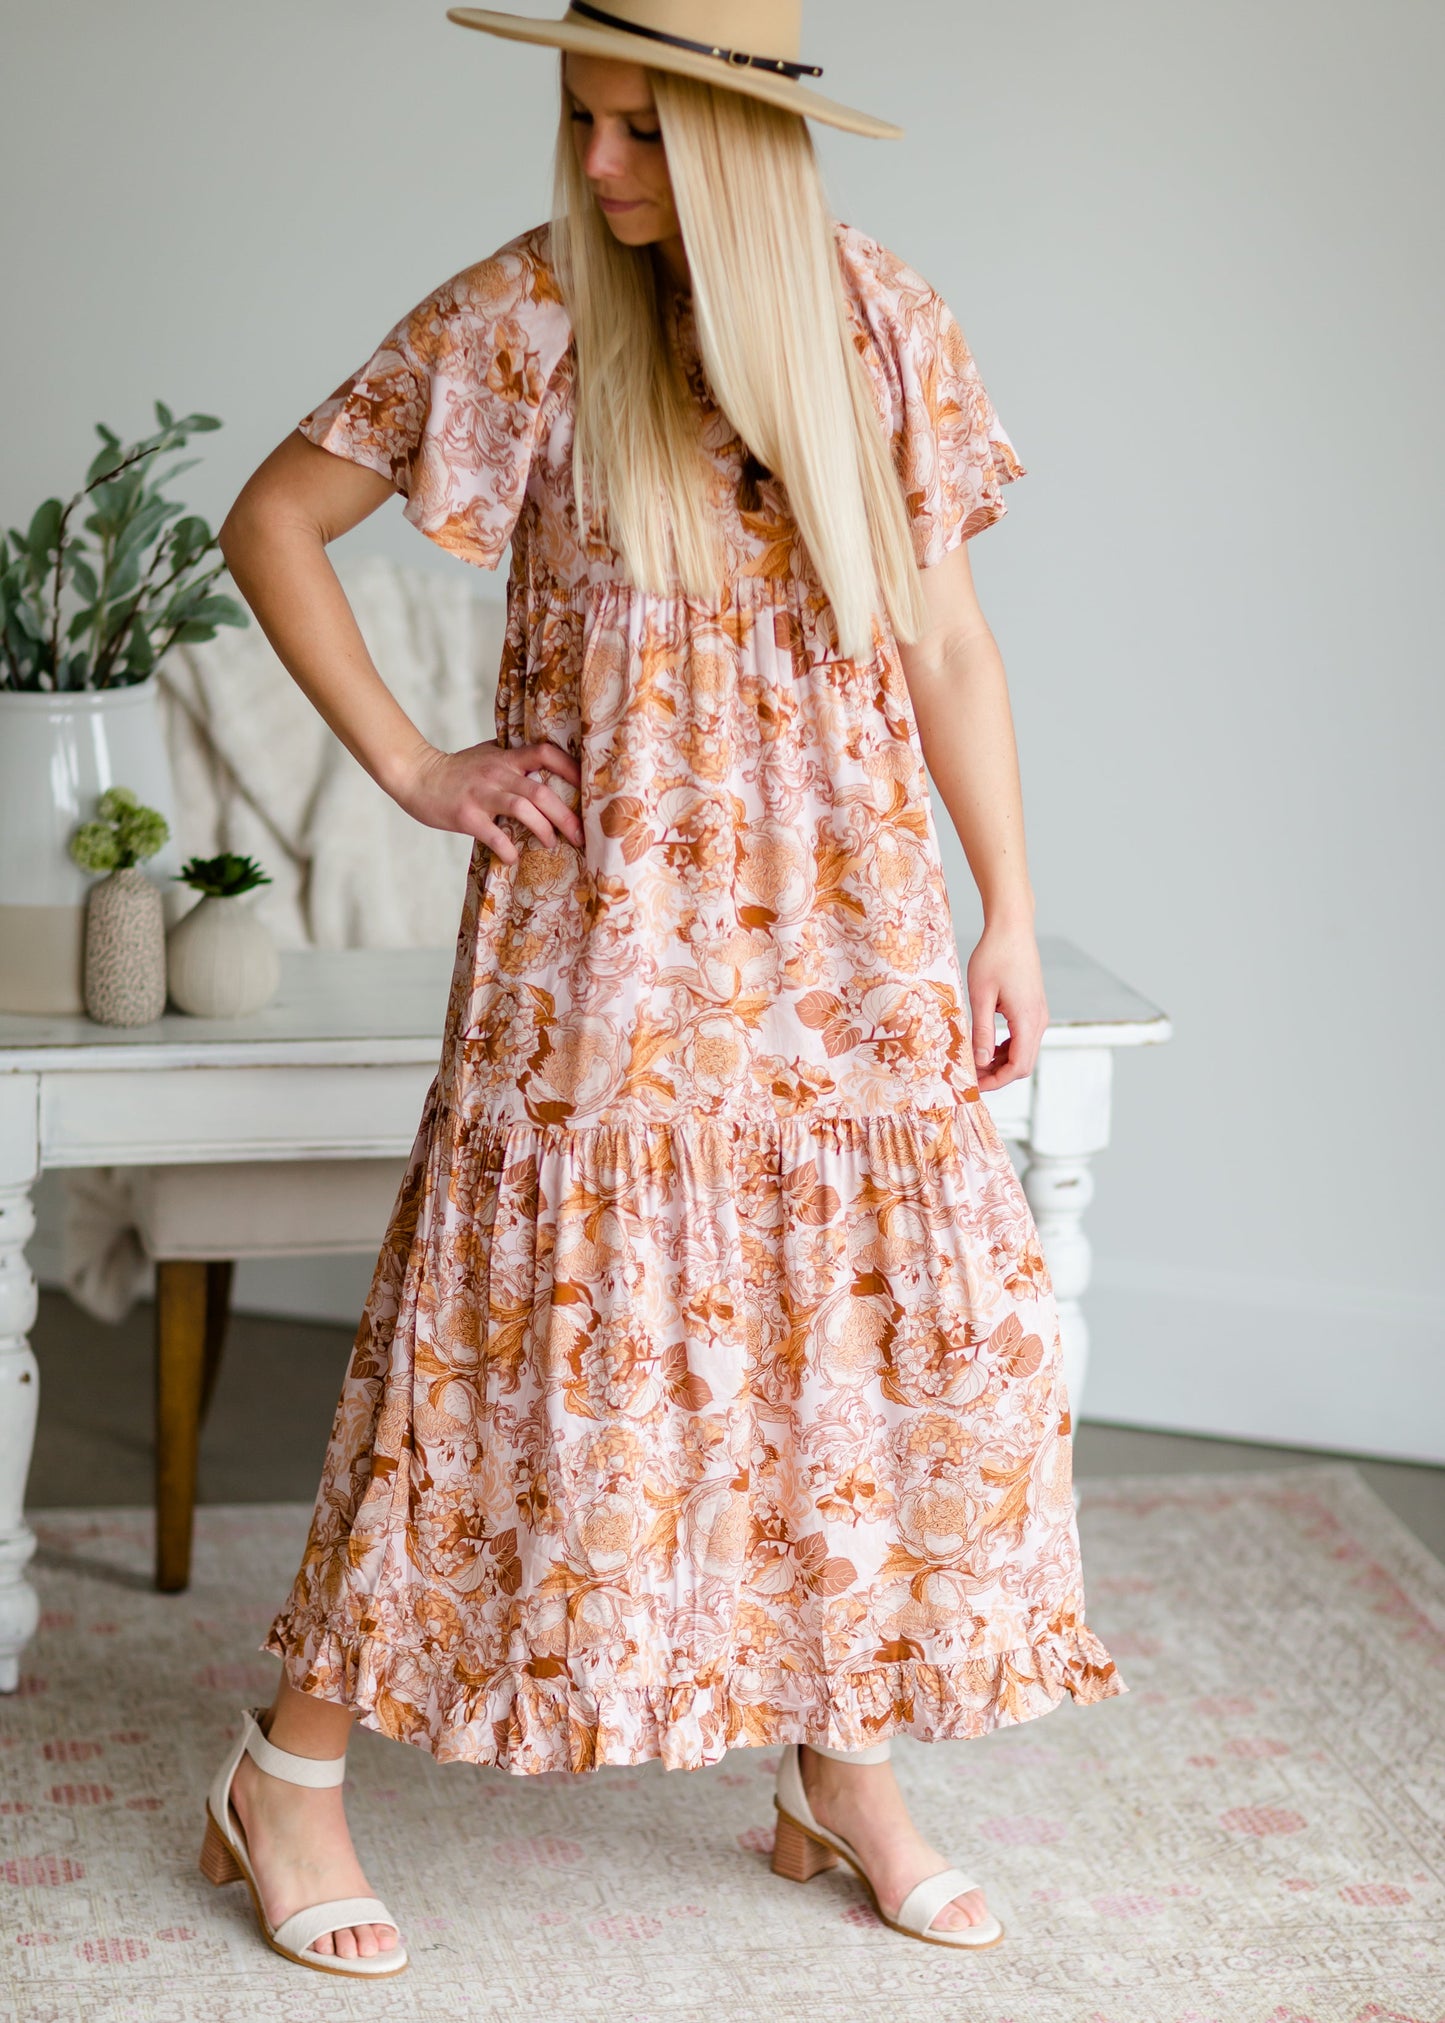 Blush Floral Tassel-Tie Maxi Dress - FINAL SALE Dresses